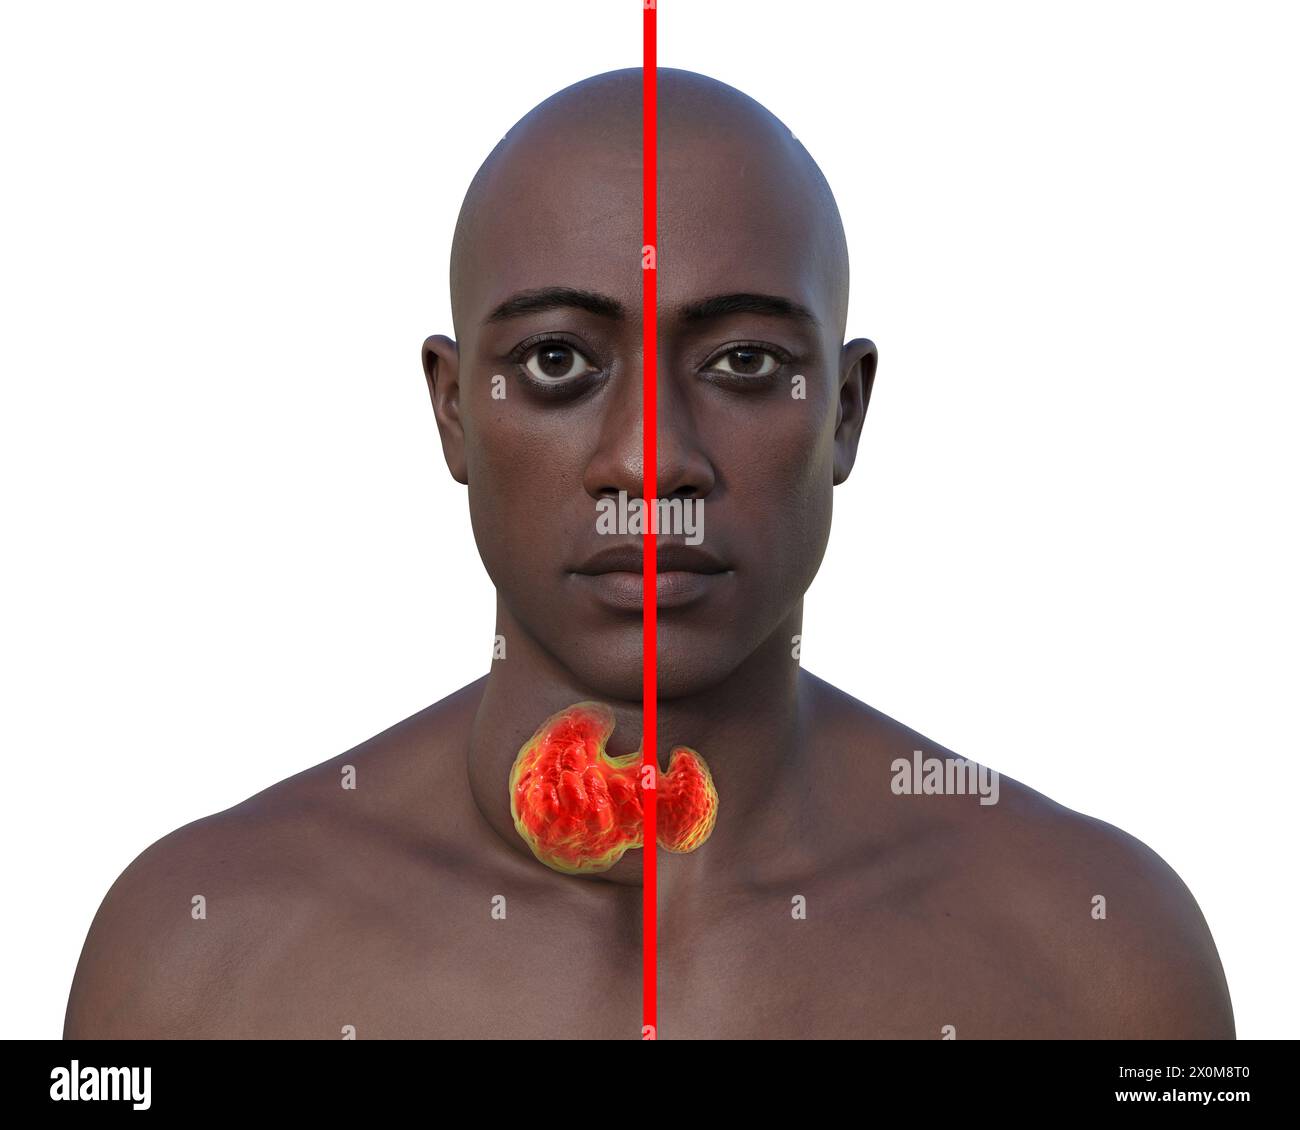 3D-Illustration eines Mannes mit einer vergrößerten Schilddrüse (Struma, Nackenbasis) und abnormer Vorwölbung der Augen (Exophthalmus), und derselbe Mann mit gesunder Schilddrüse und Augen zum Vergleich (rechts). Dies sind zwei Symptome einer überaktiven Schilddrüse, bekannt als Hyperthyreose. Stockfoto